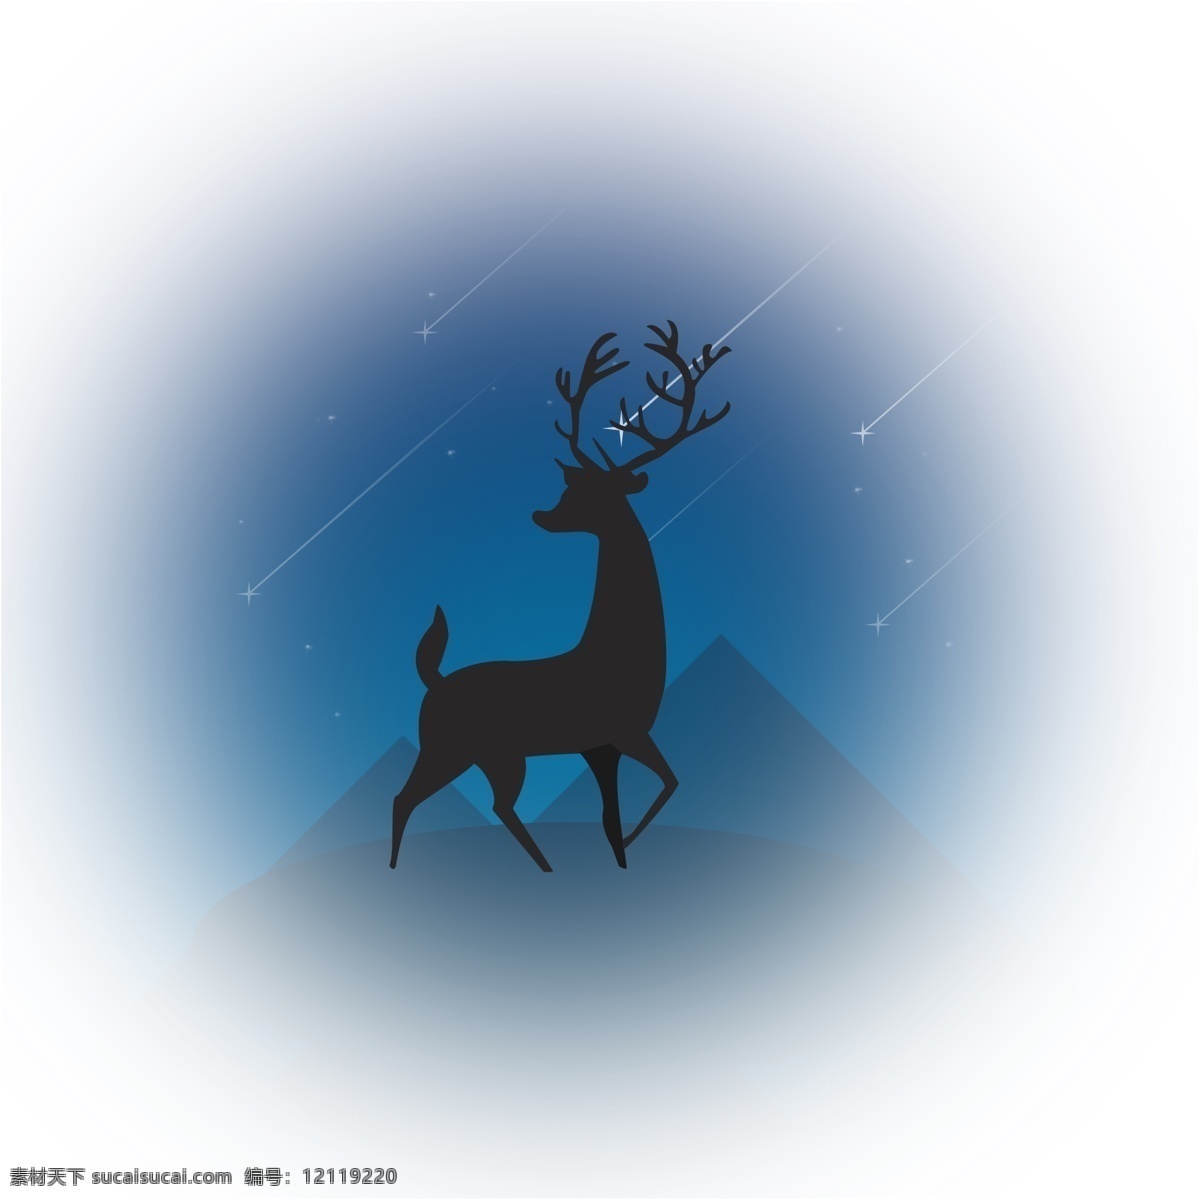 星空 下 麋鹿 不 迷路 原创 元素 剪影 动物 星星 圣诞 配图